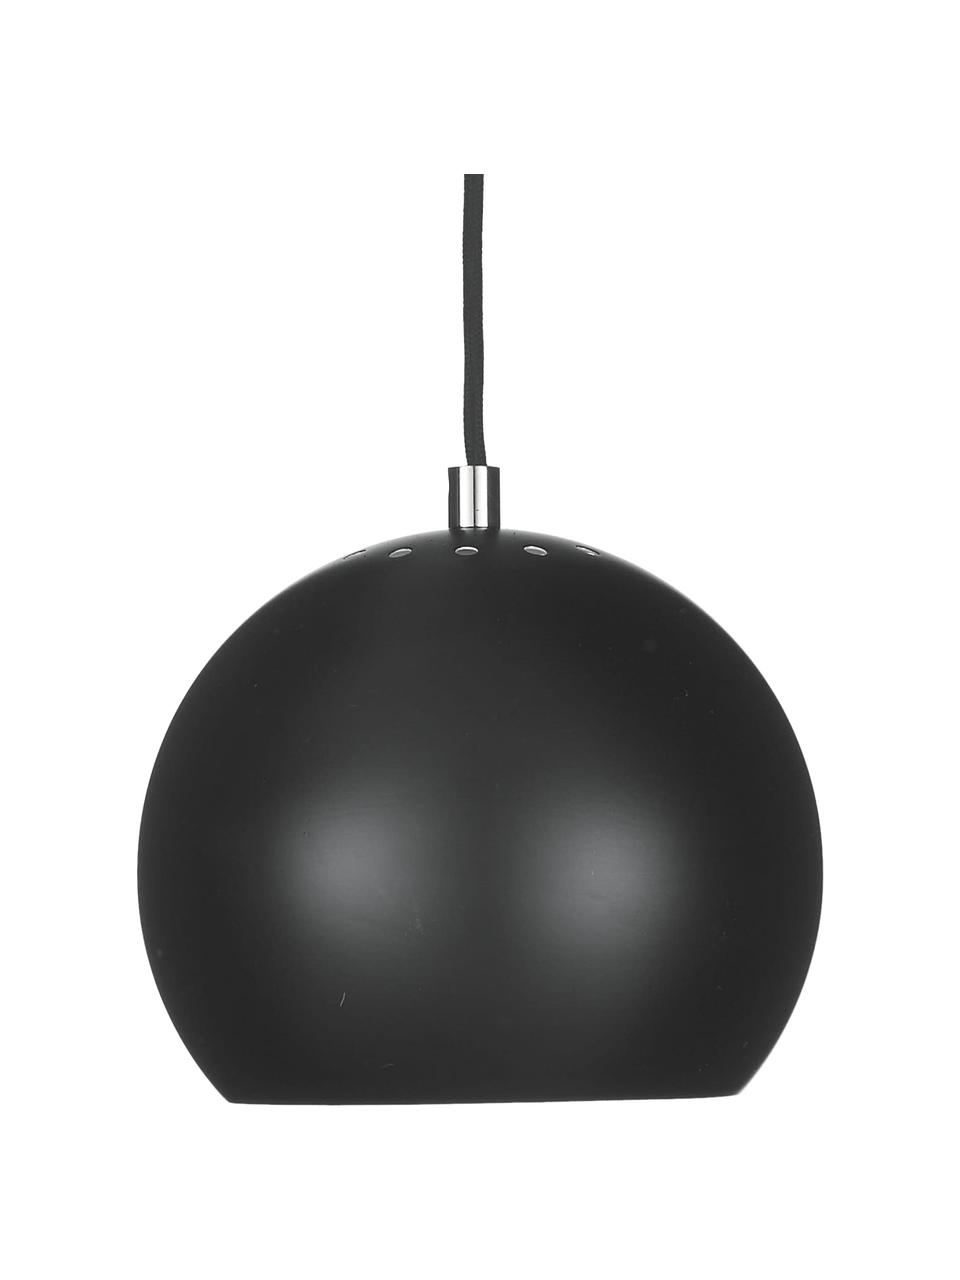 Lámpara de techo pequeña Ball, Pantalla: metal con pintura en polv, Anclaje: metal con pintura en polv, Cable: cubierto en tela, Negro mate, Ø 18 x Al 16 cm